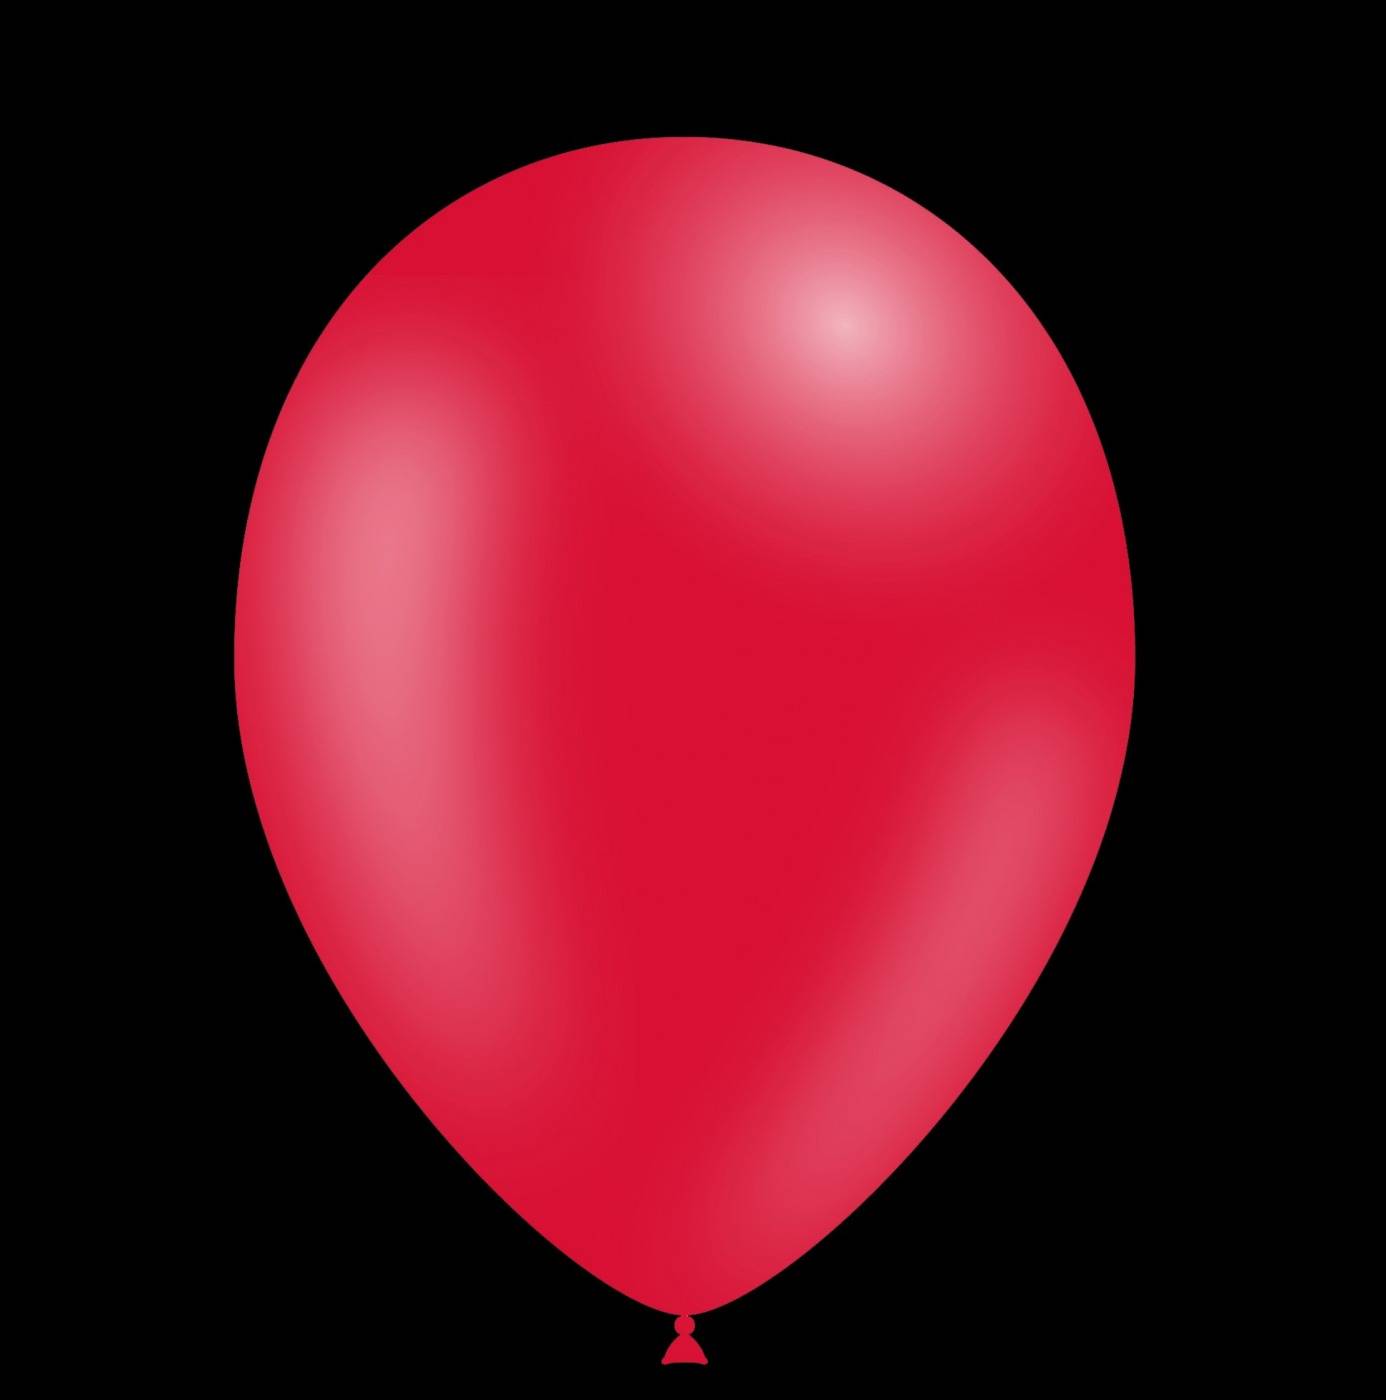 Paradox Atletisch Goodwill Rode ballonnen 28cm kopen? | De Horeca Bazaar